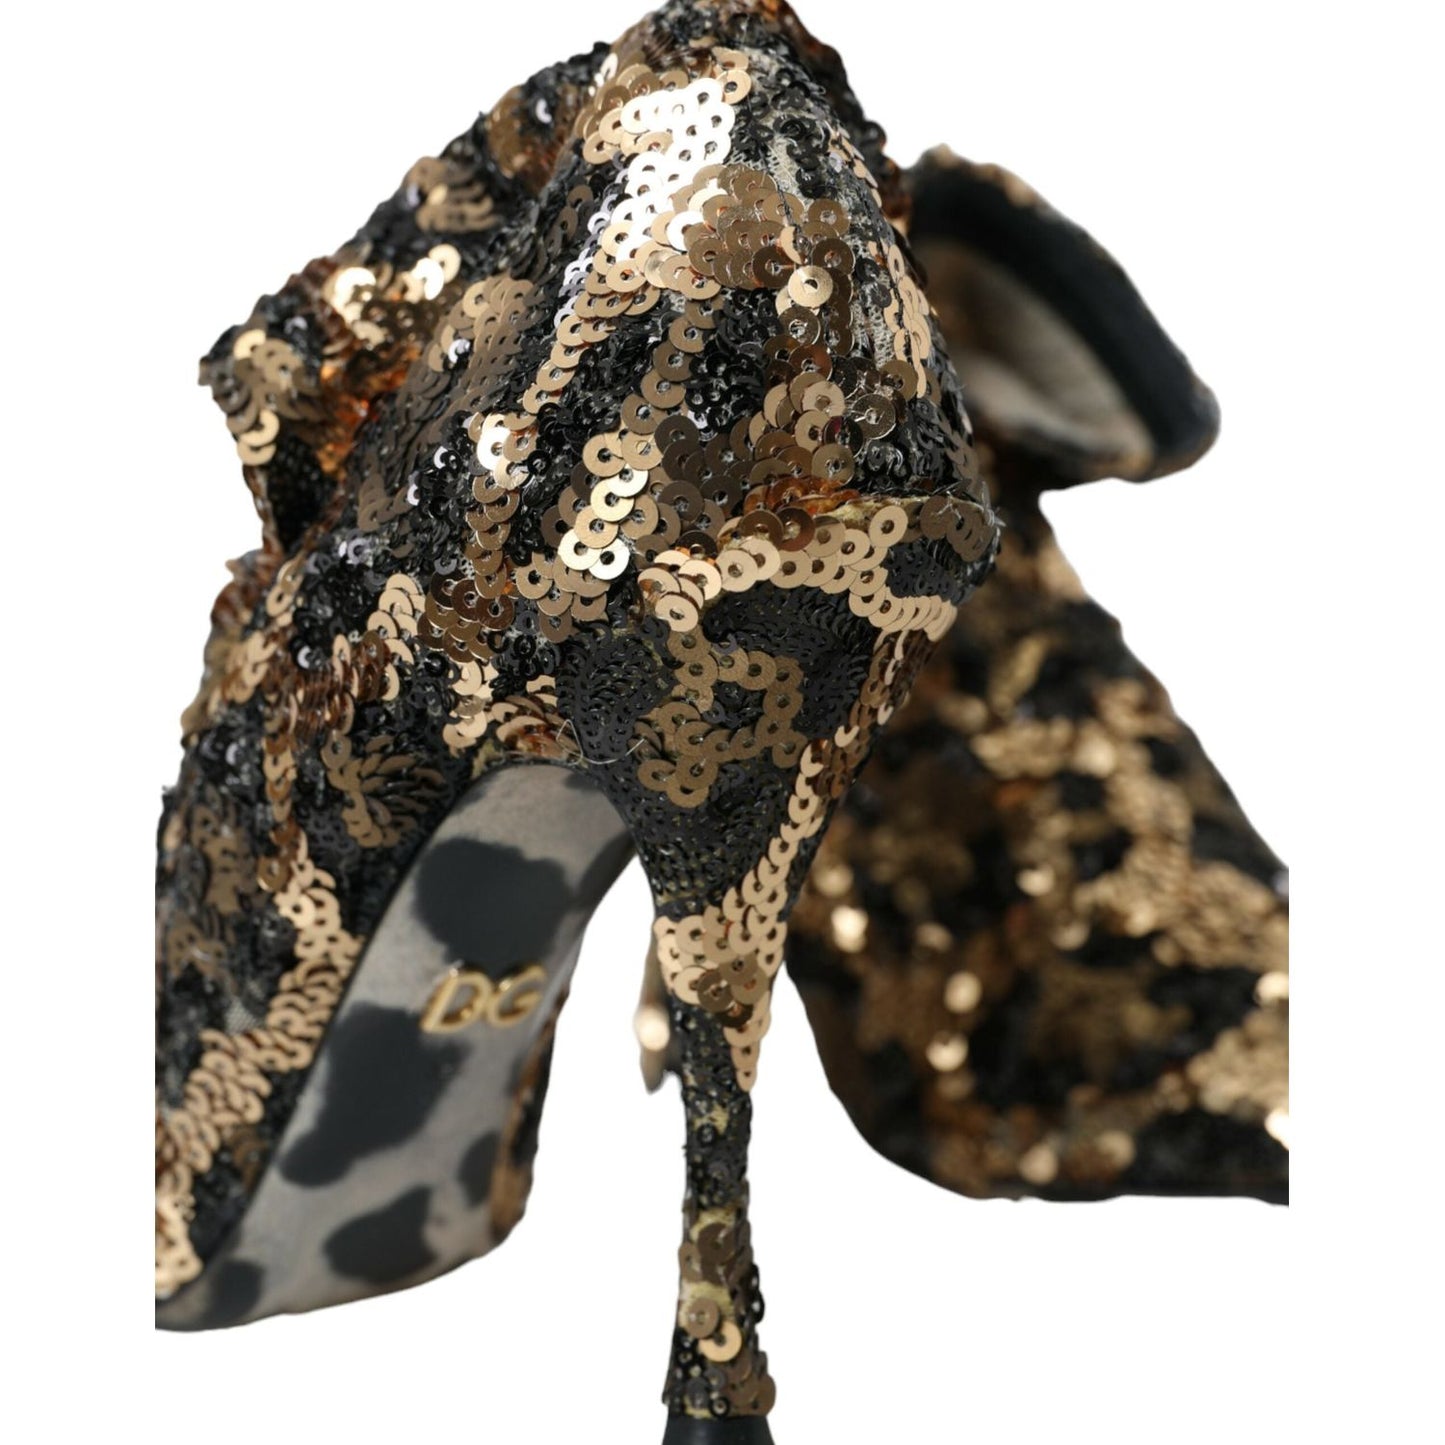 Dolce & Gabbana Gold Leopard Sequins Heels Boots Shoes gold-leopard-sequins-heels-boots-shoes-1